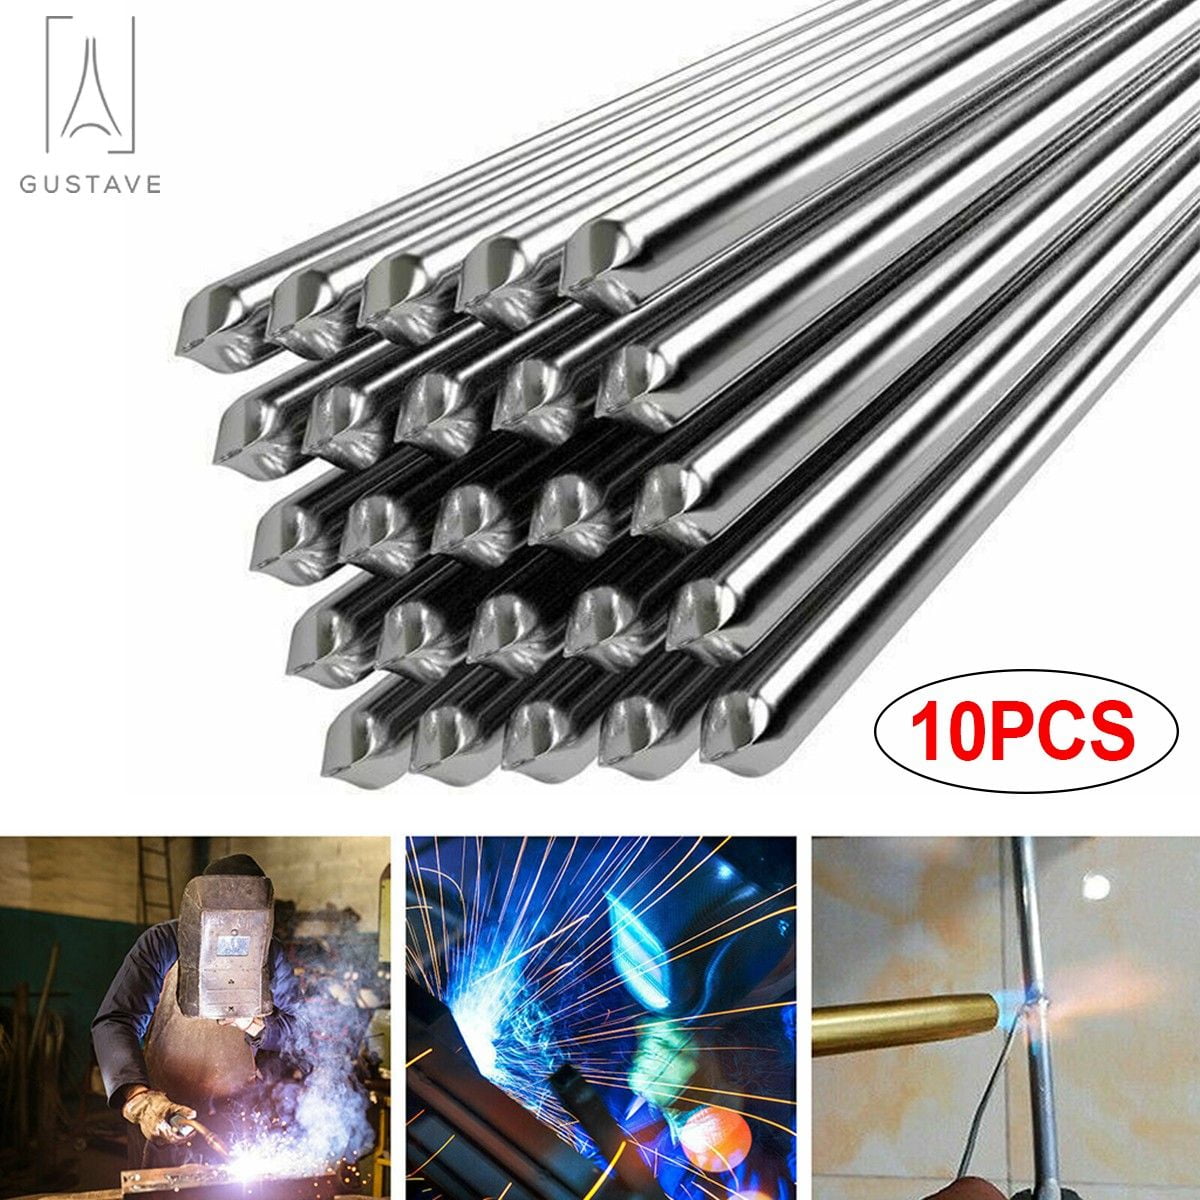 30PCS Aluminum Wire 33cm/1.08ft Solution Welding Flux Cored Rods US fanla_ 